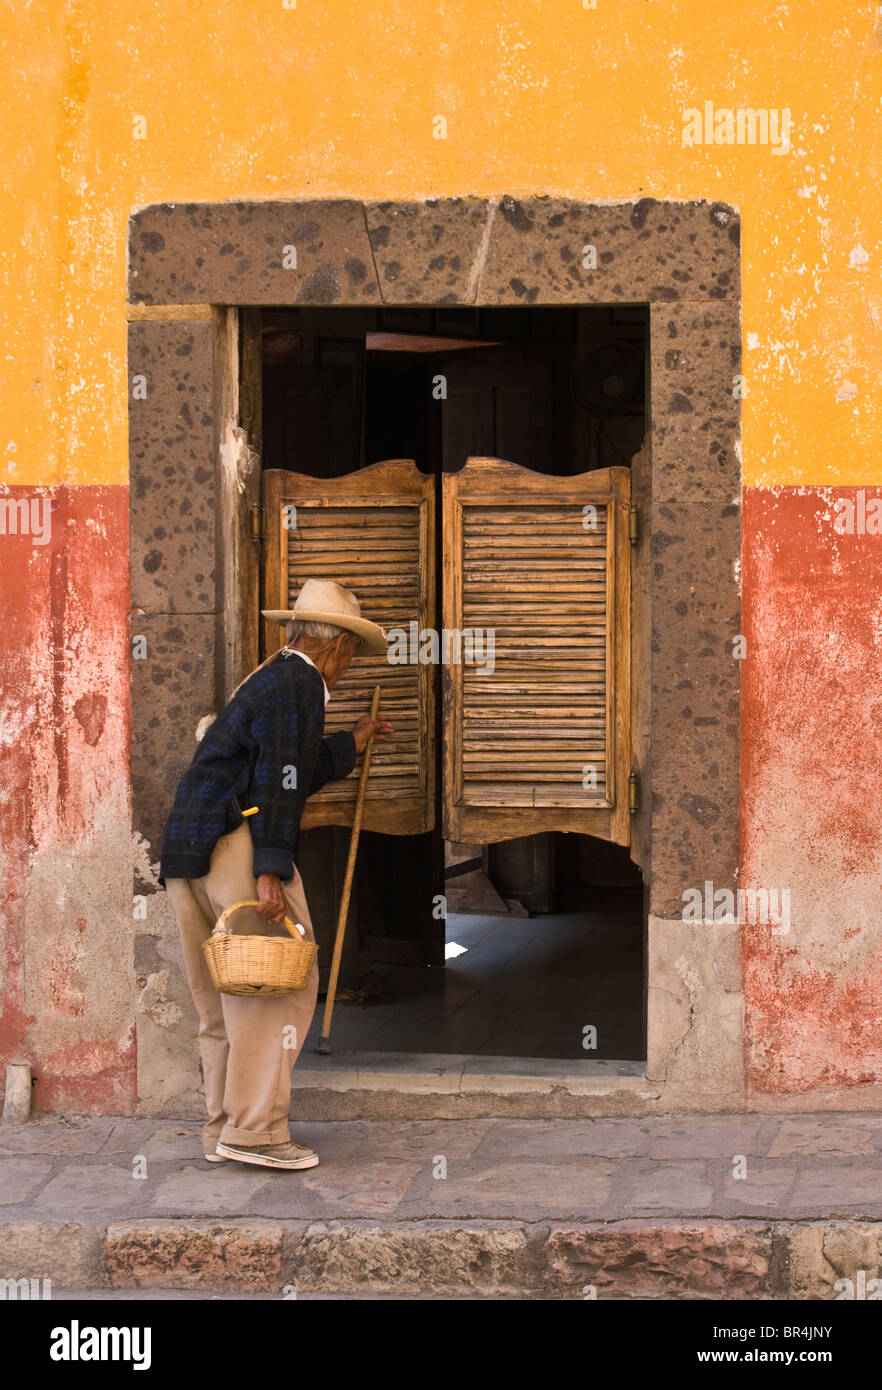 A Mexican farmer enters a SALOON - SAN MIGUEL DE ALLENDE, MEXICO Stock Photo